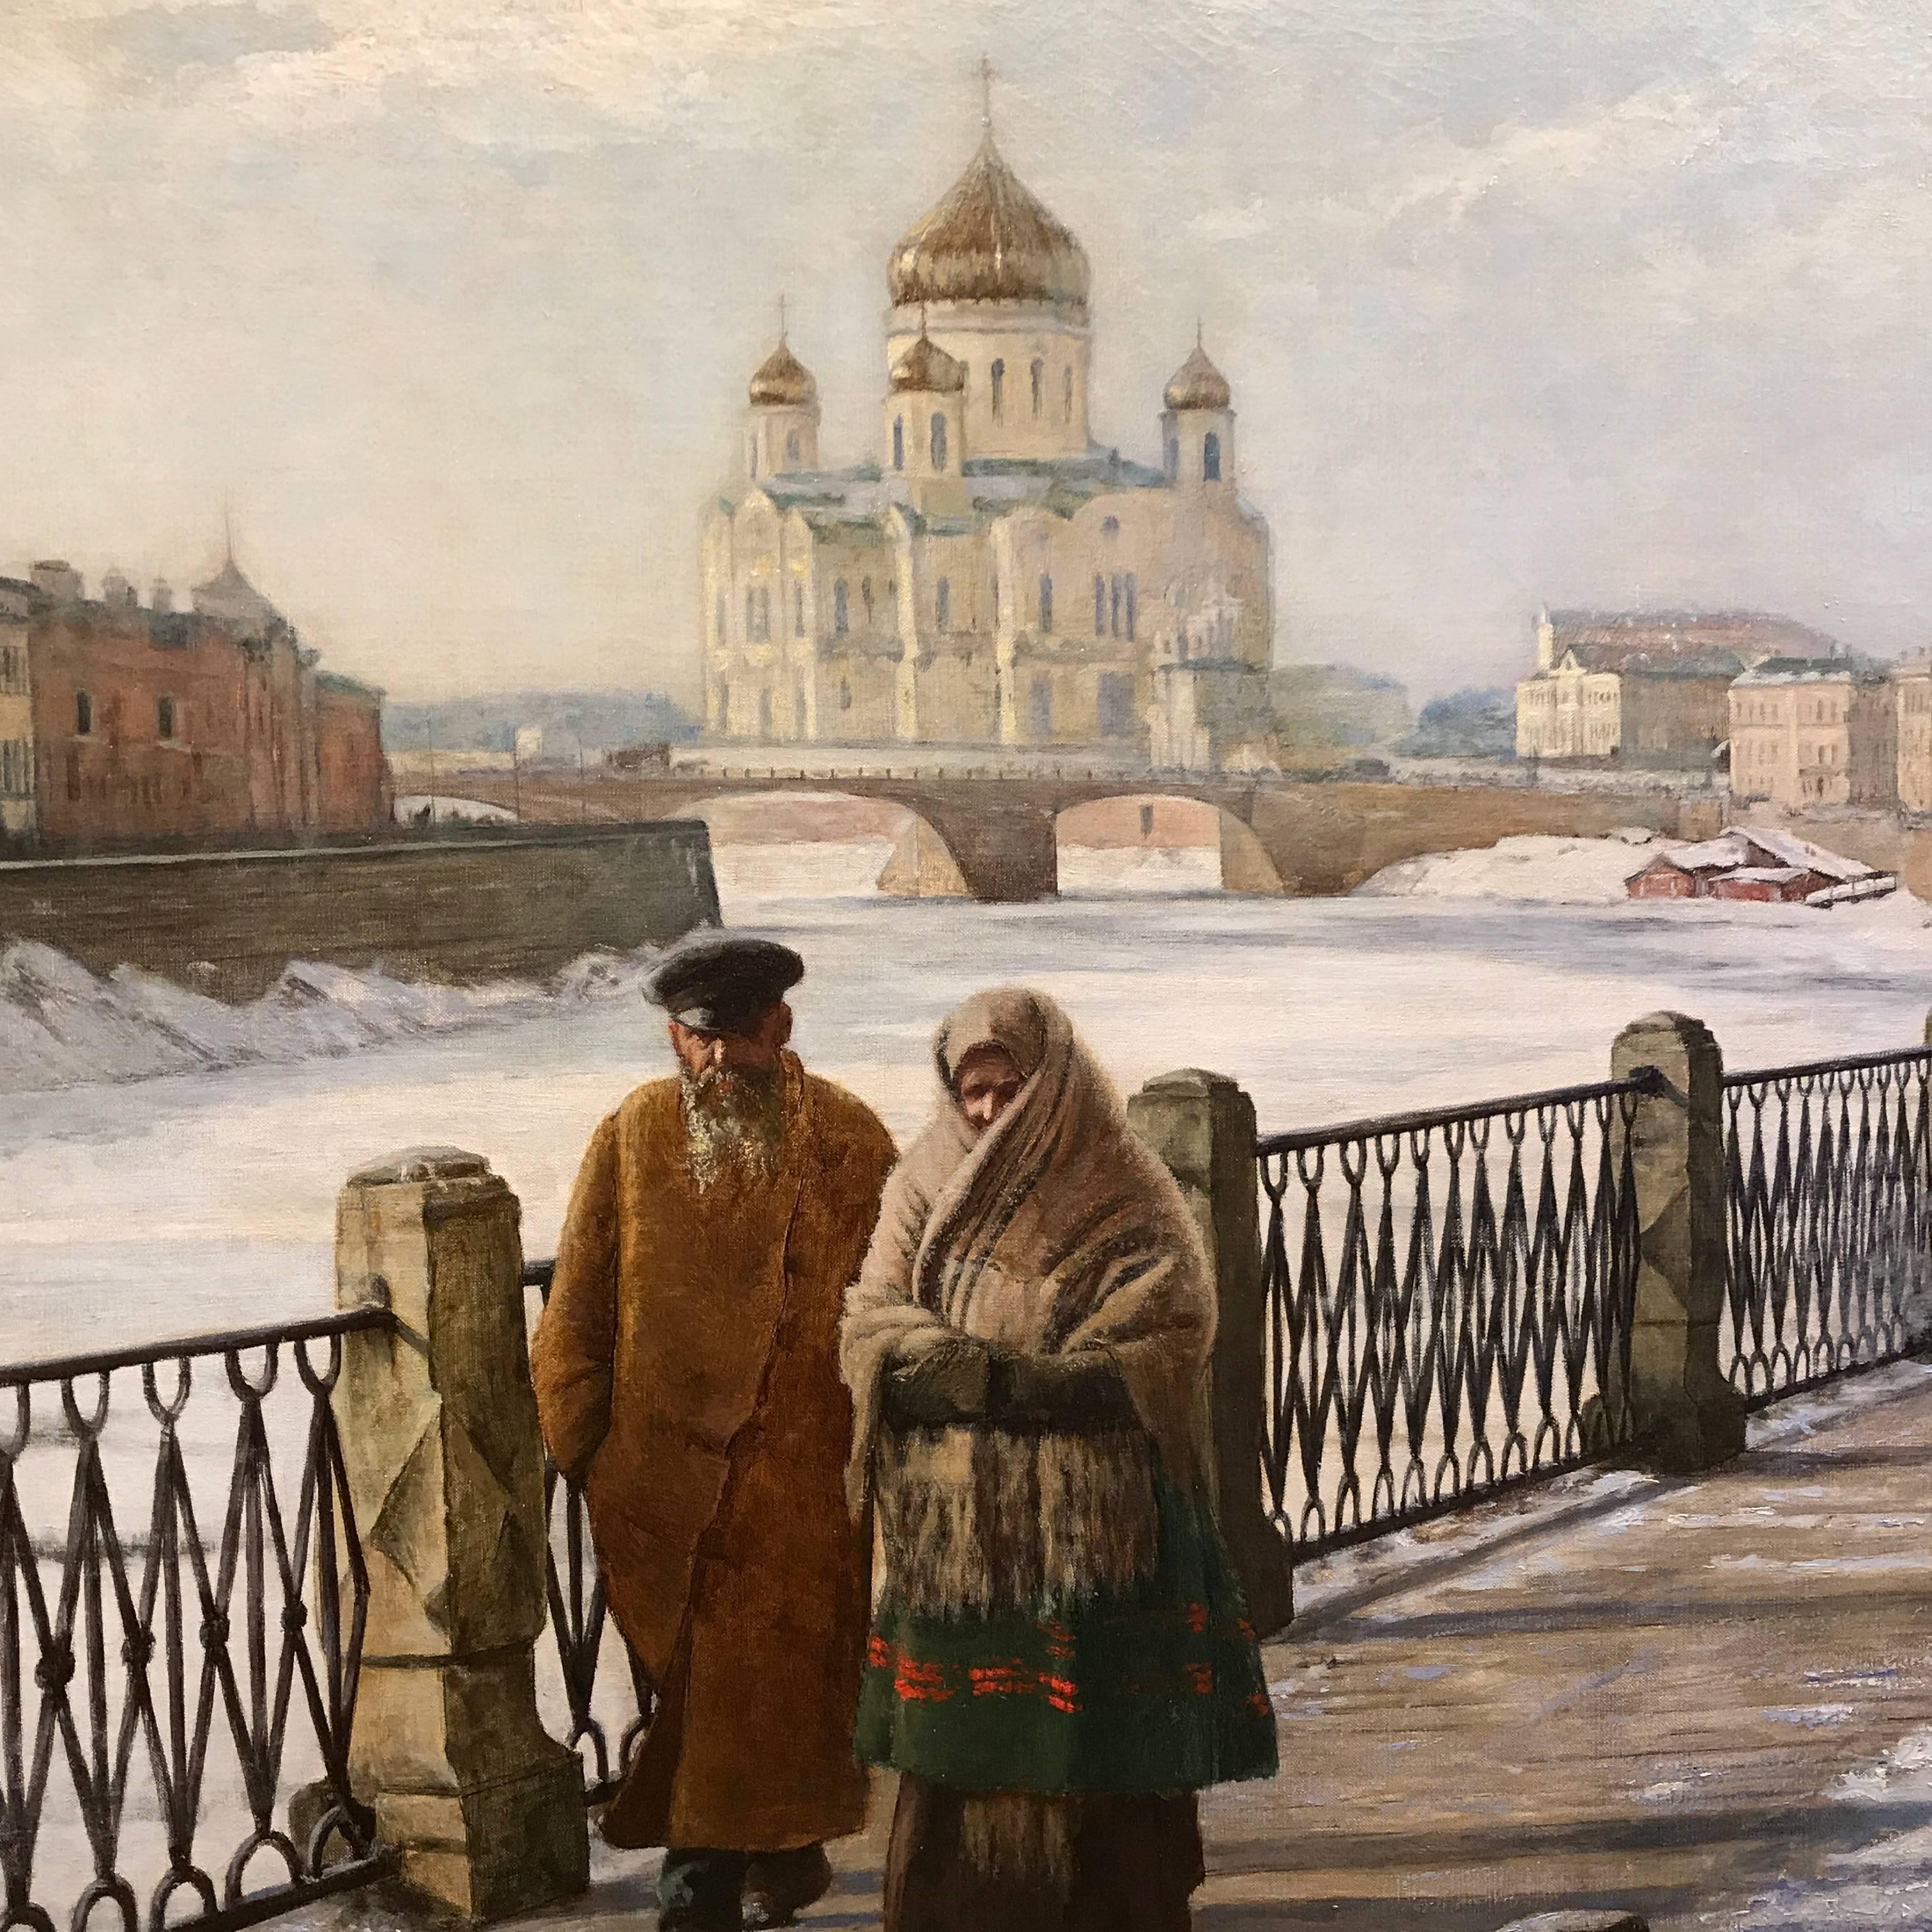 La Moscowa à Moscou, sous la Neige  - Painting by Paul Louis Bouchard